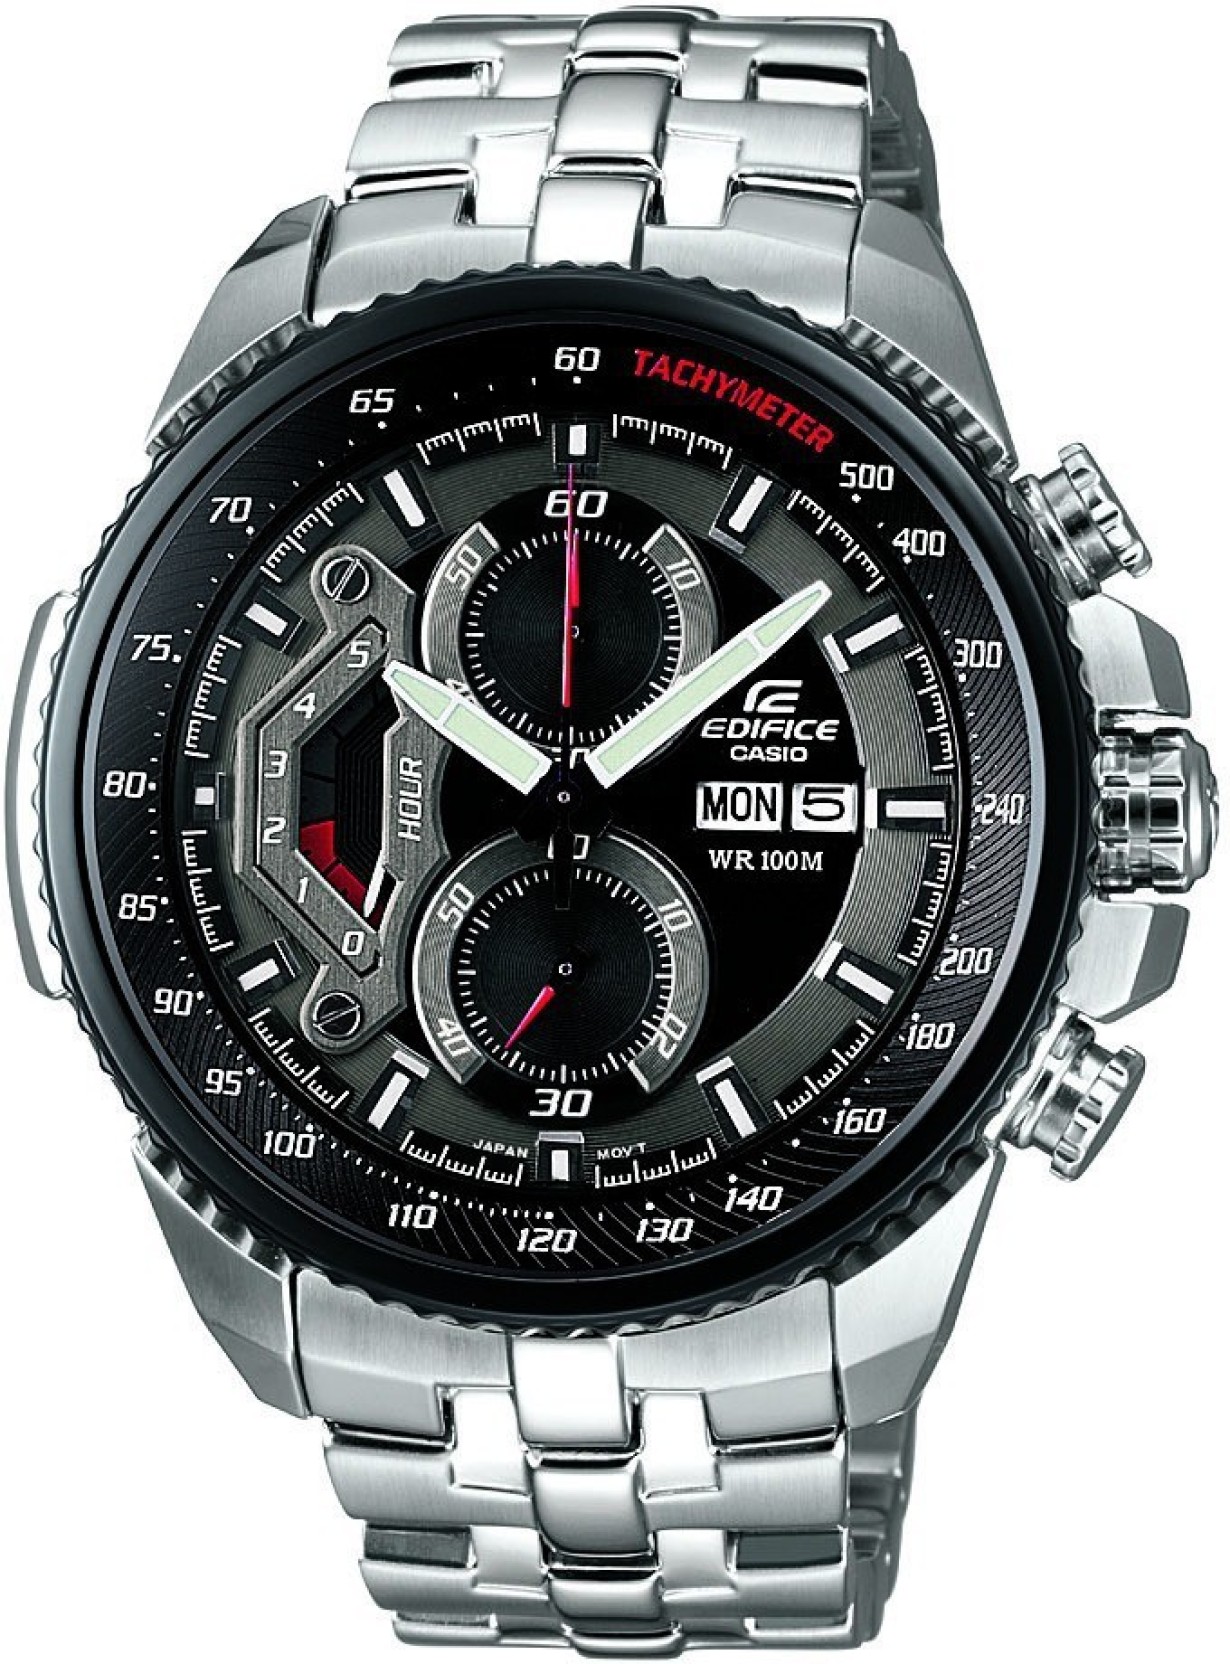 Casio ED436 Edifice Watch For Men Buy Casio ED436 Edifice Watch